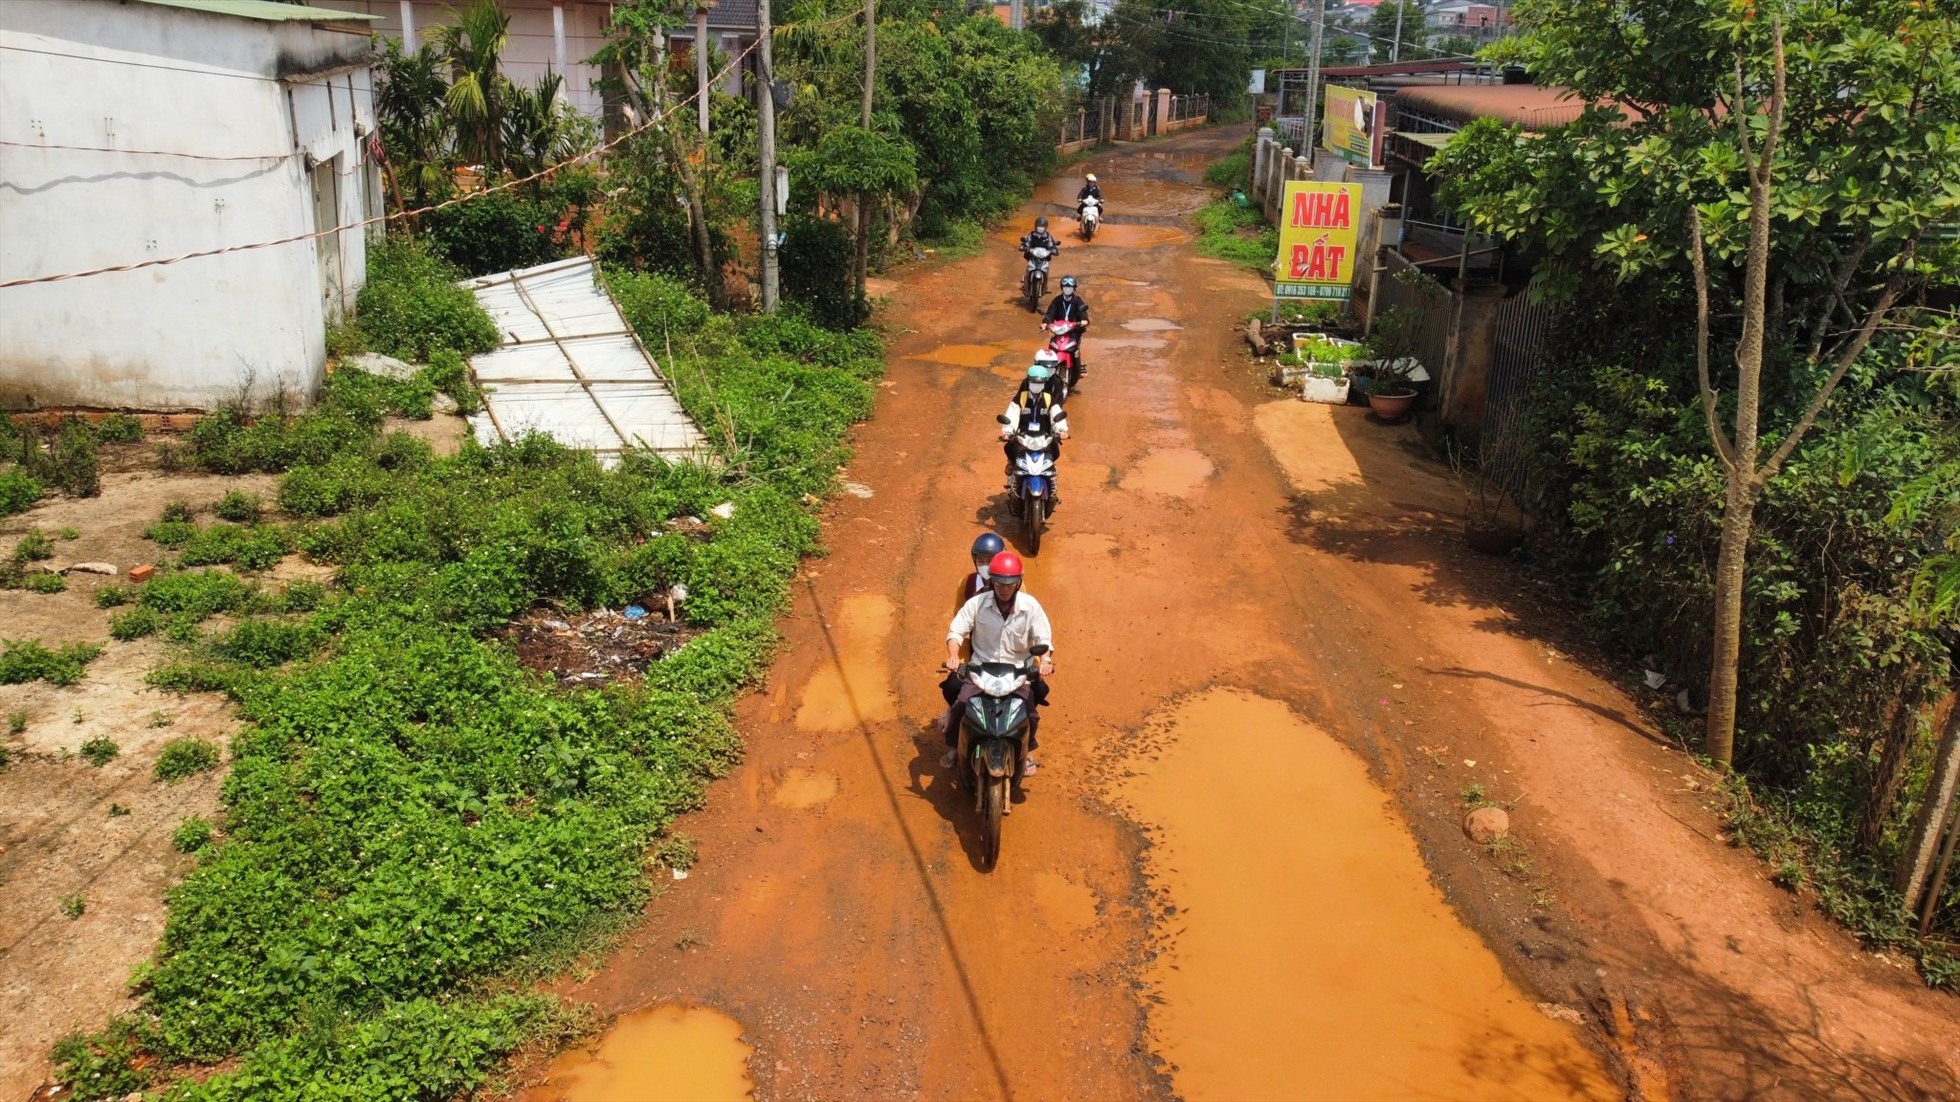 Đường giao thông ở huyện Đắk Song hư hỏng nhưng không thể đầu tư xây dựng vì vướng quy hoạch khai thác bô xít không biết bao giờ mới triển khai. Ảnh: Phan Tuấn